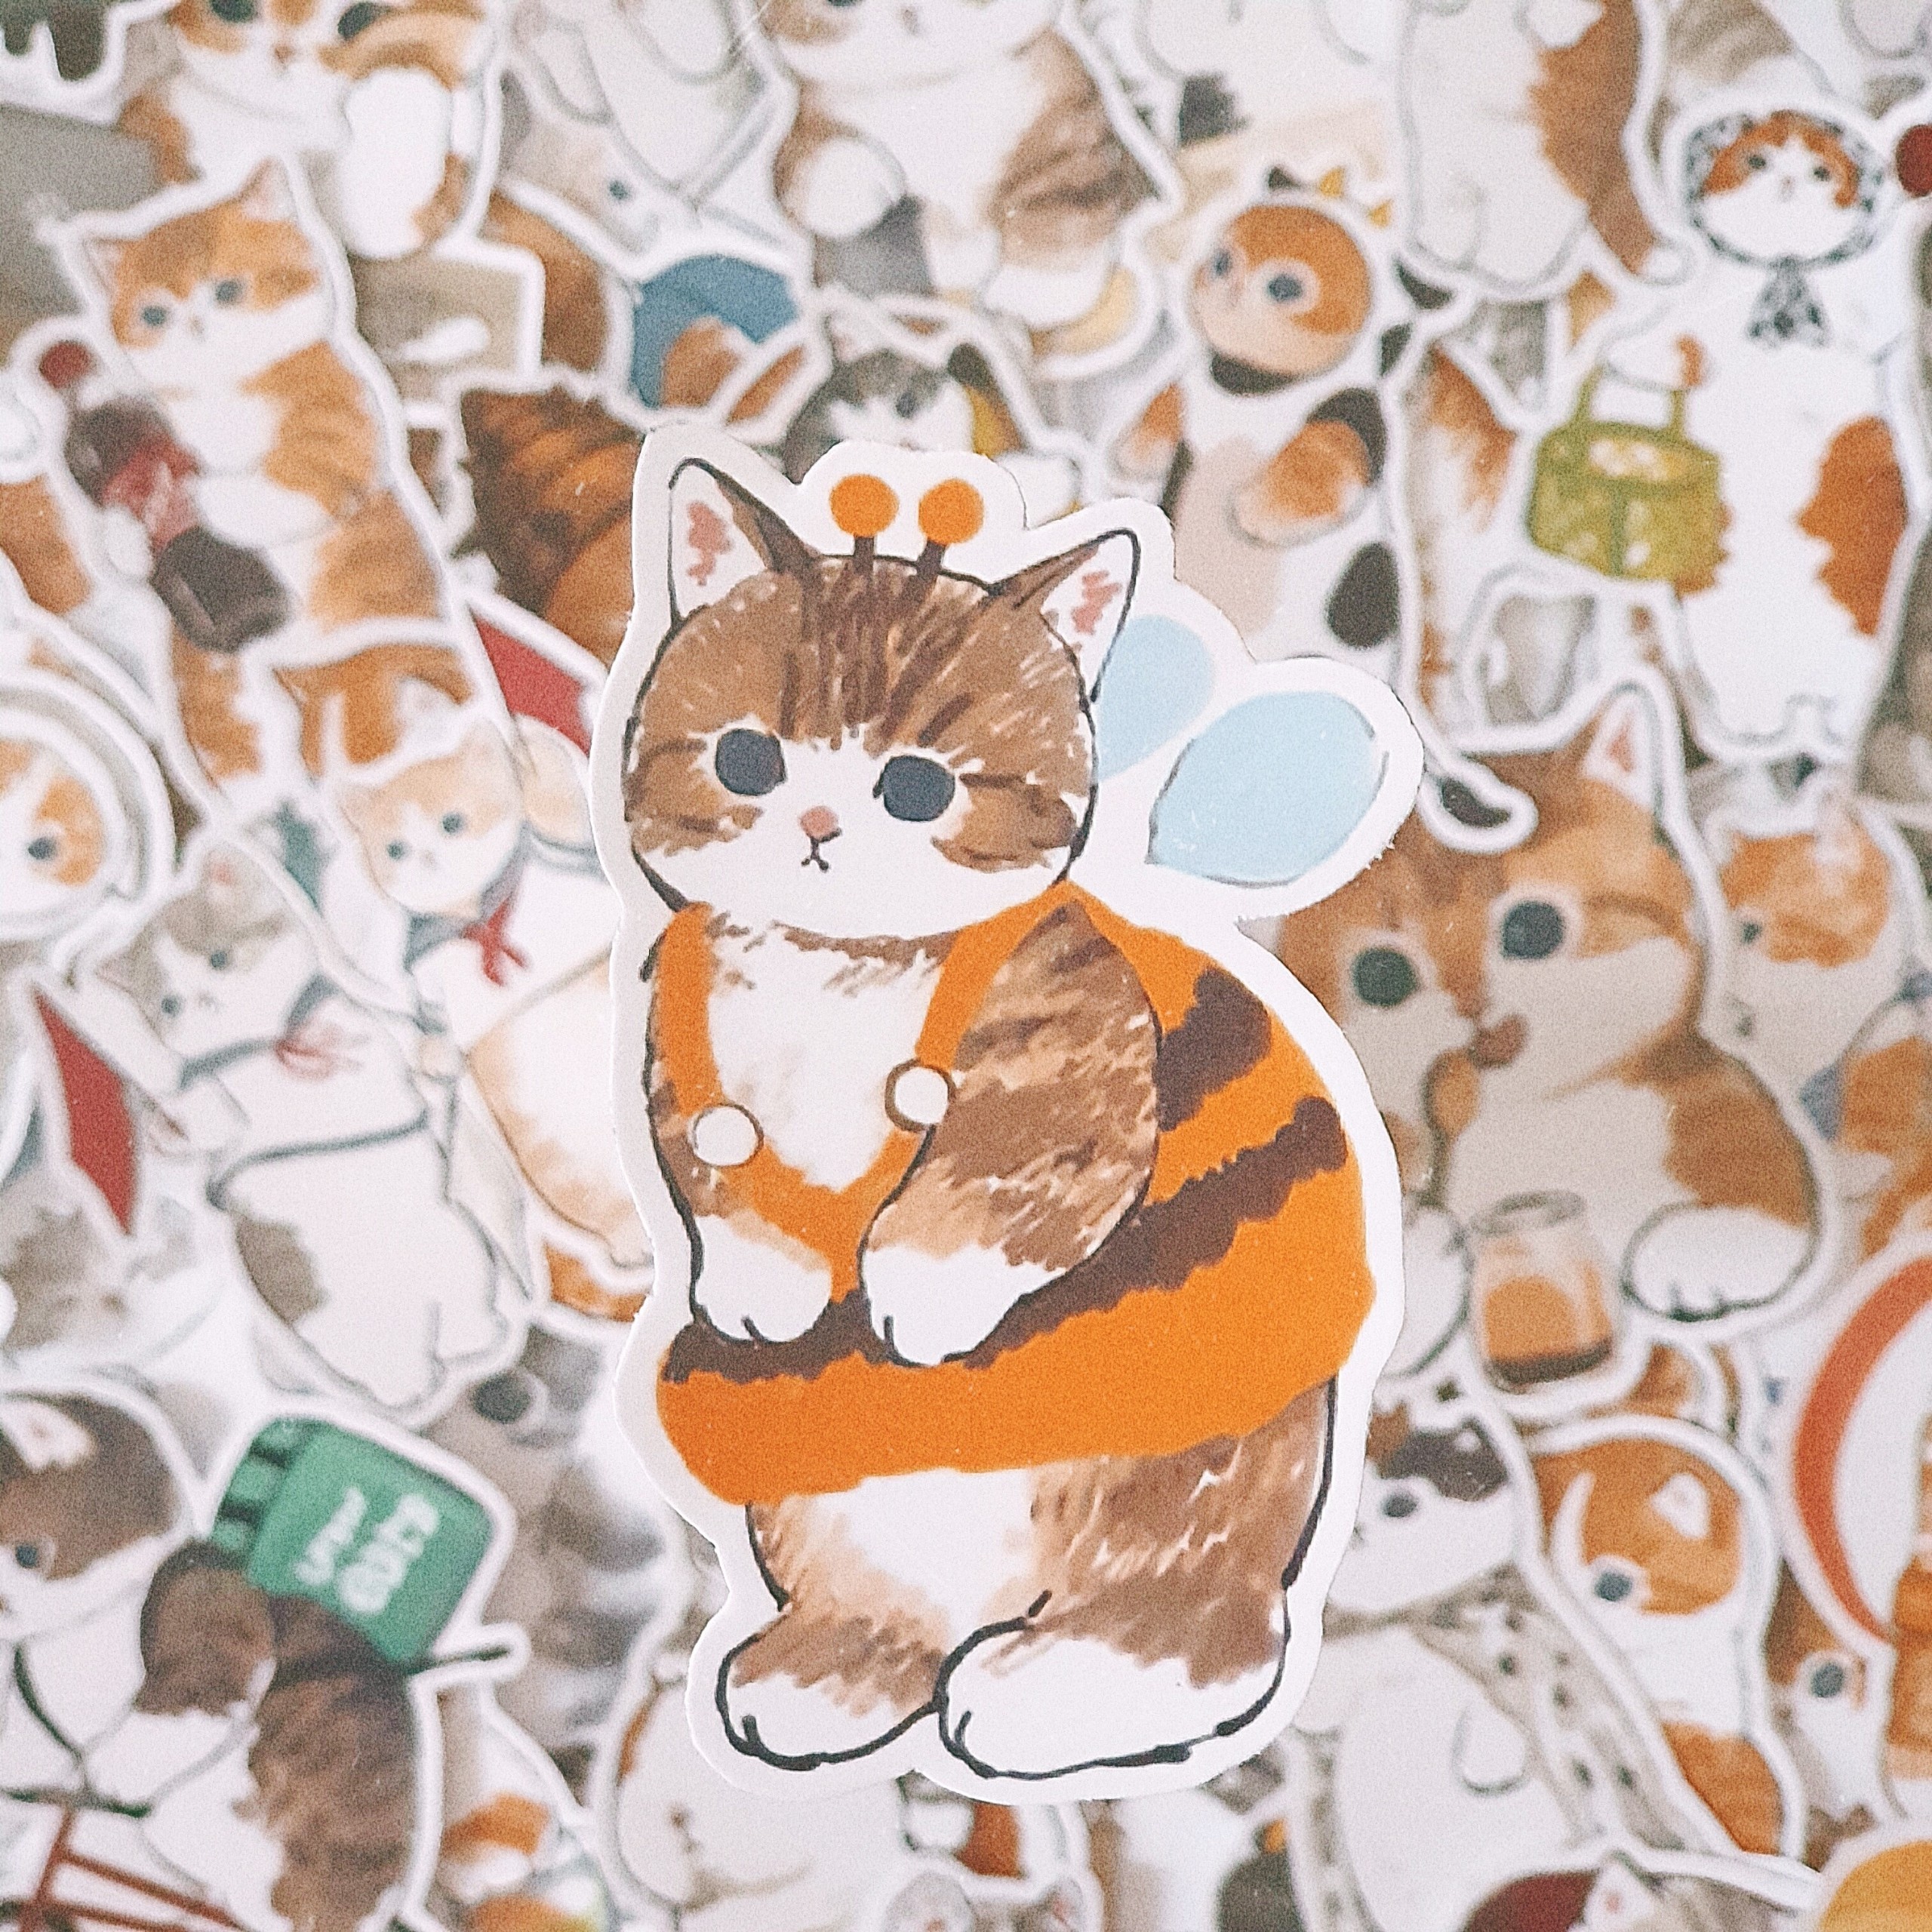 Bộ sticker chống thấm nước trang trí mũ bảo hiểm, đàn, guitar, ukulele, điện thoại laptop, dán sticker macbook sticker chủ đề mèo cute kitter